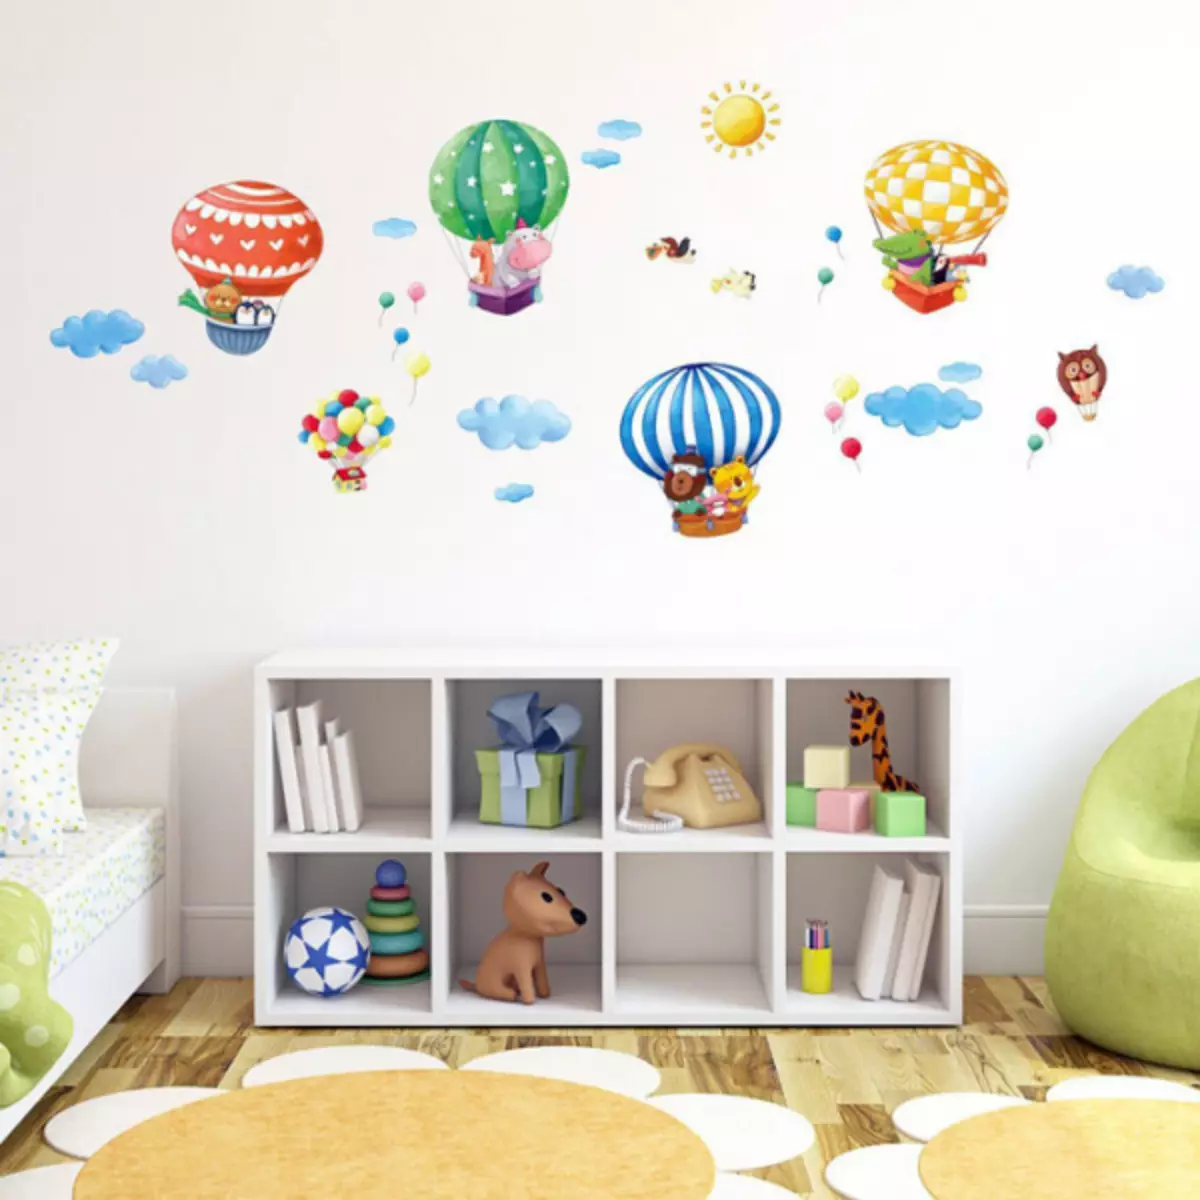 Balóny v dekoraci dětského pokoje pro radost děti